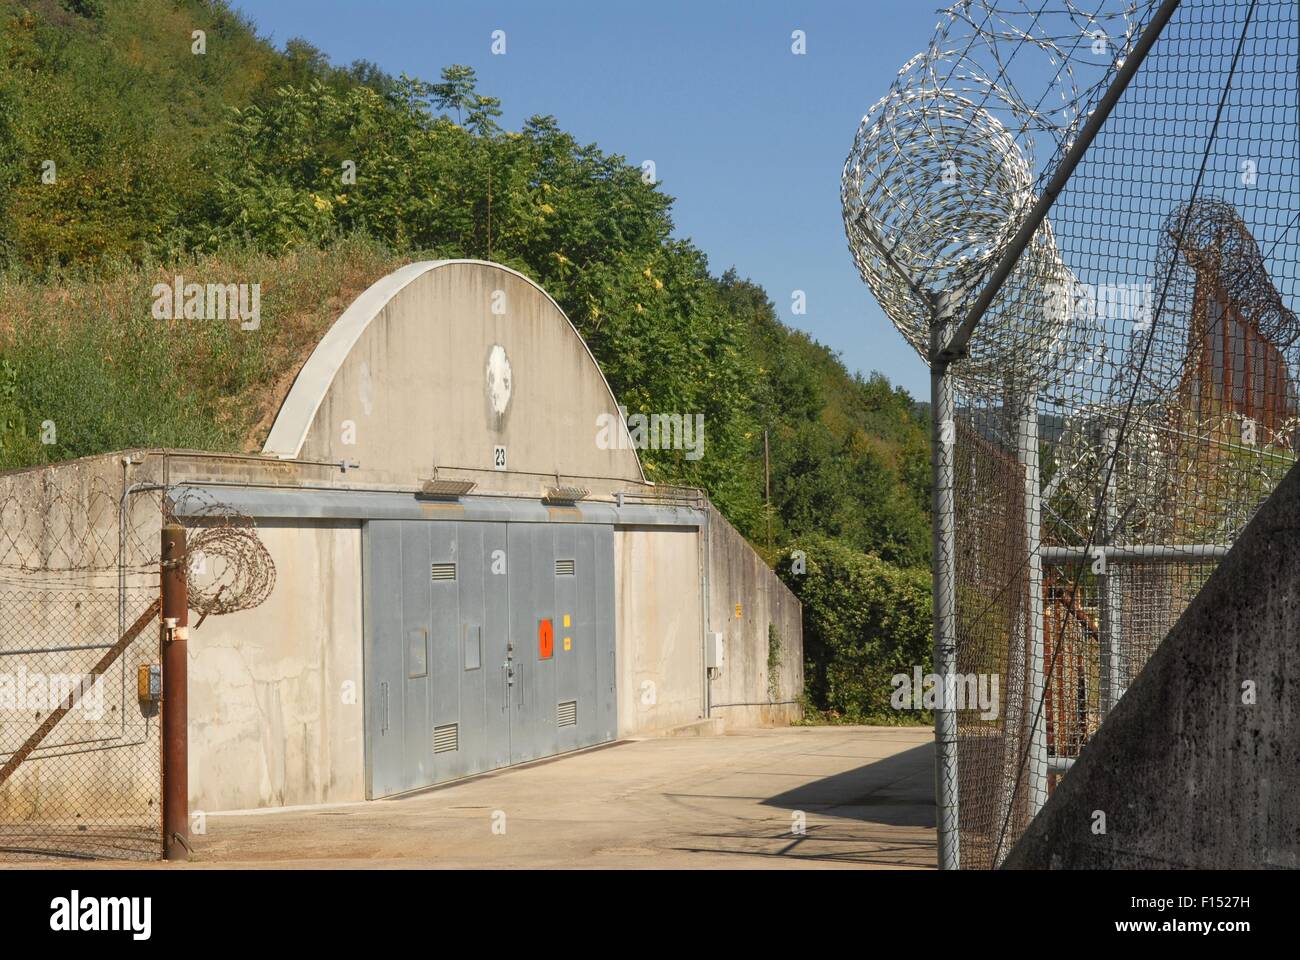 L'Italie, camp ederle base militaire américaine à Vicenza, entrepôt de munitions asp 7 (point 7) d'approvisionnement en munitions dans tormeno Banque D'Images